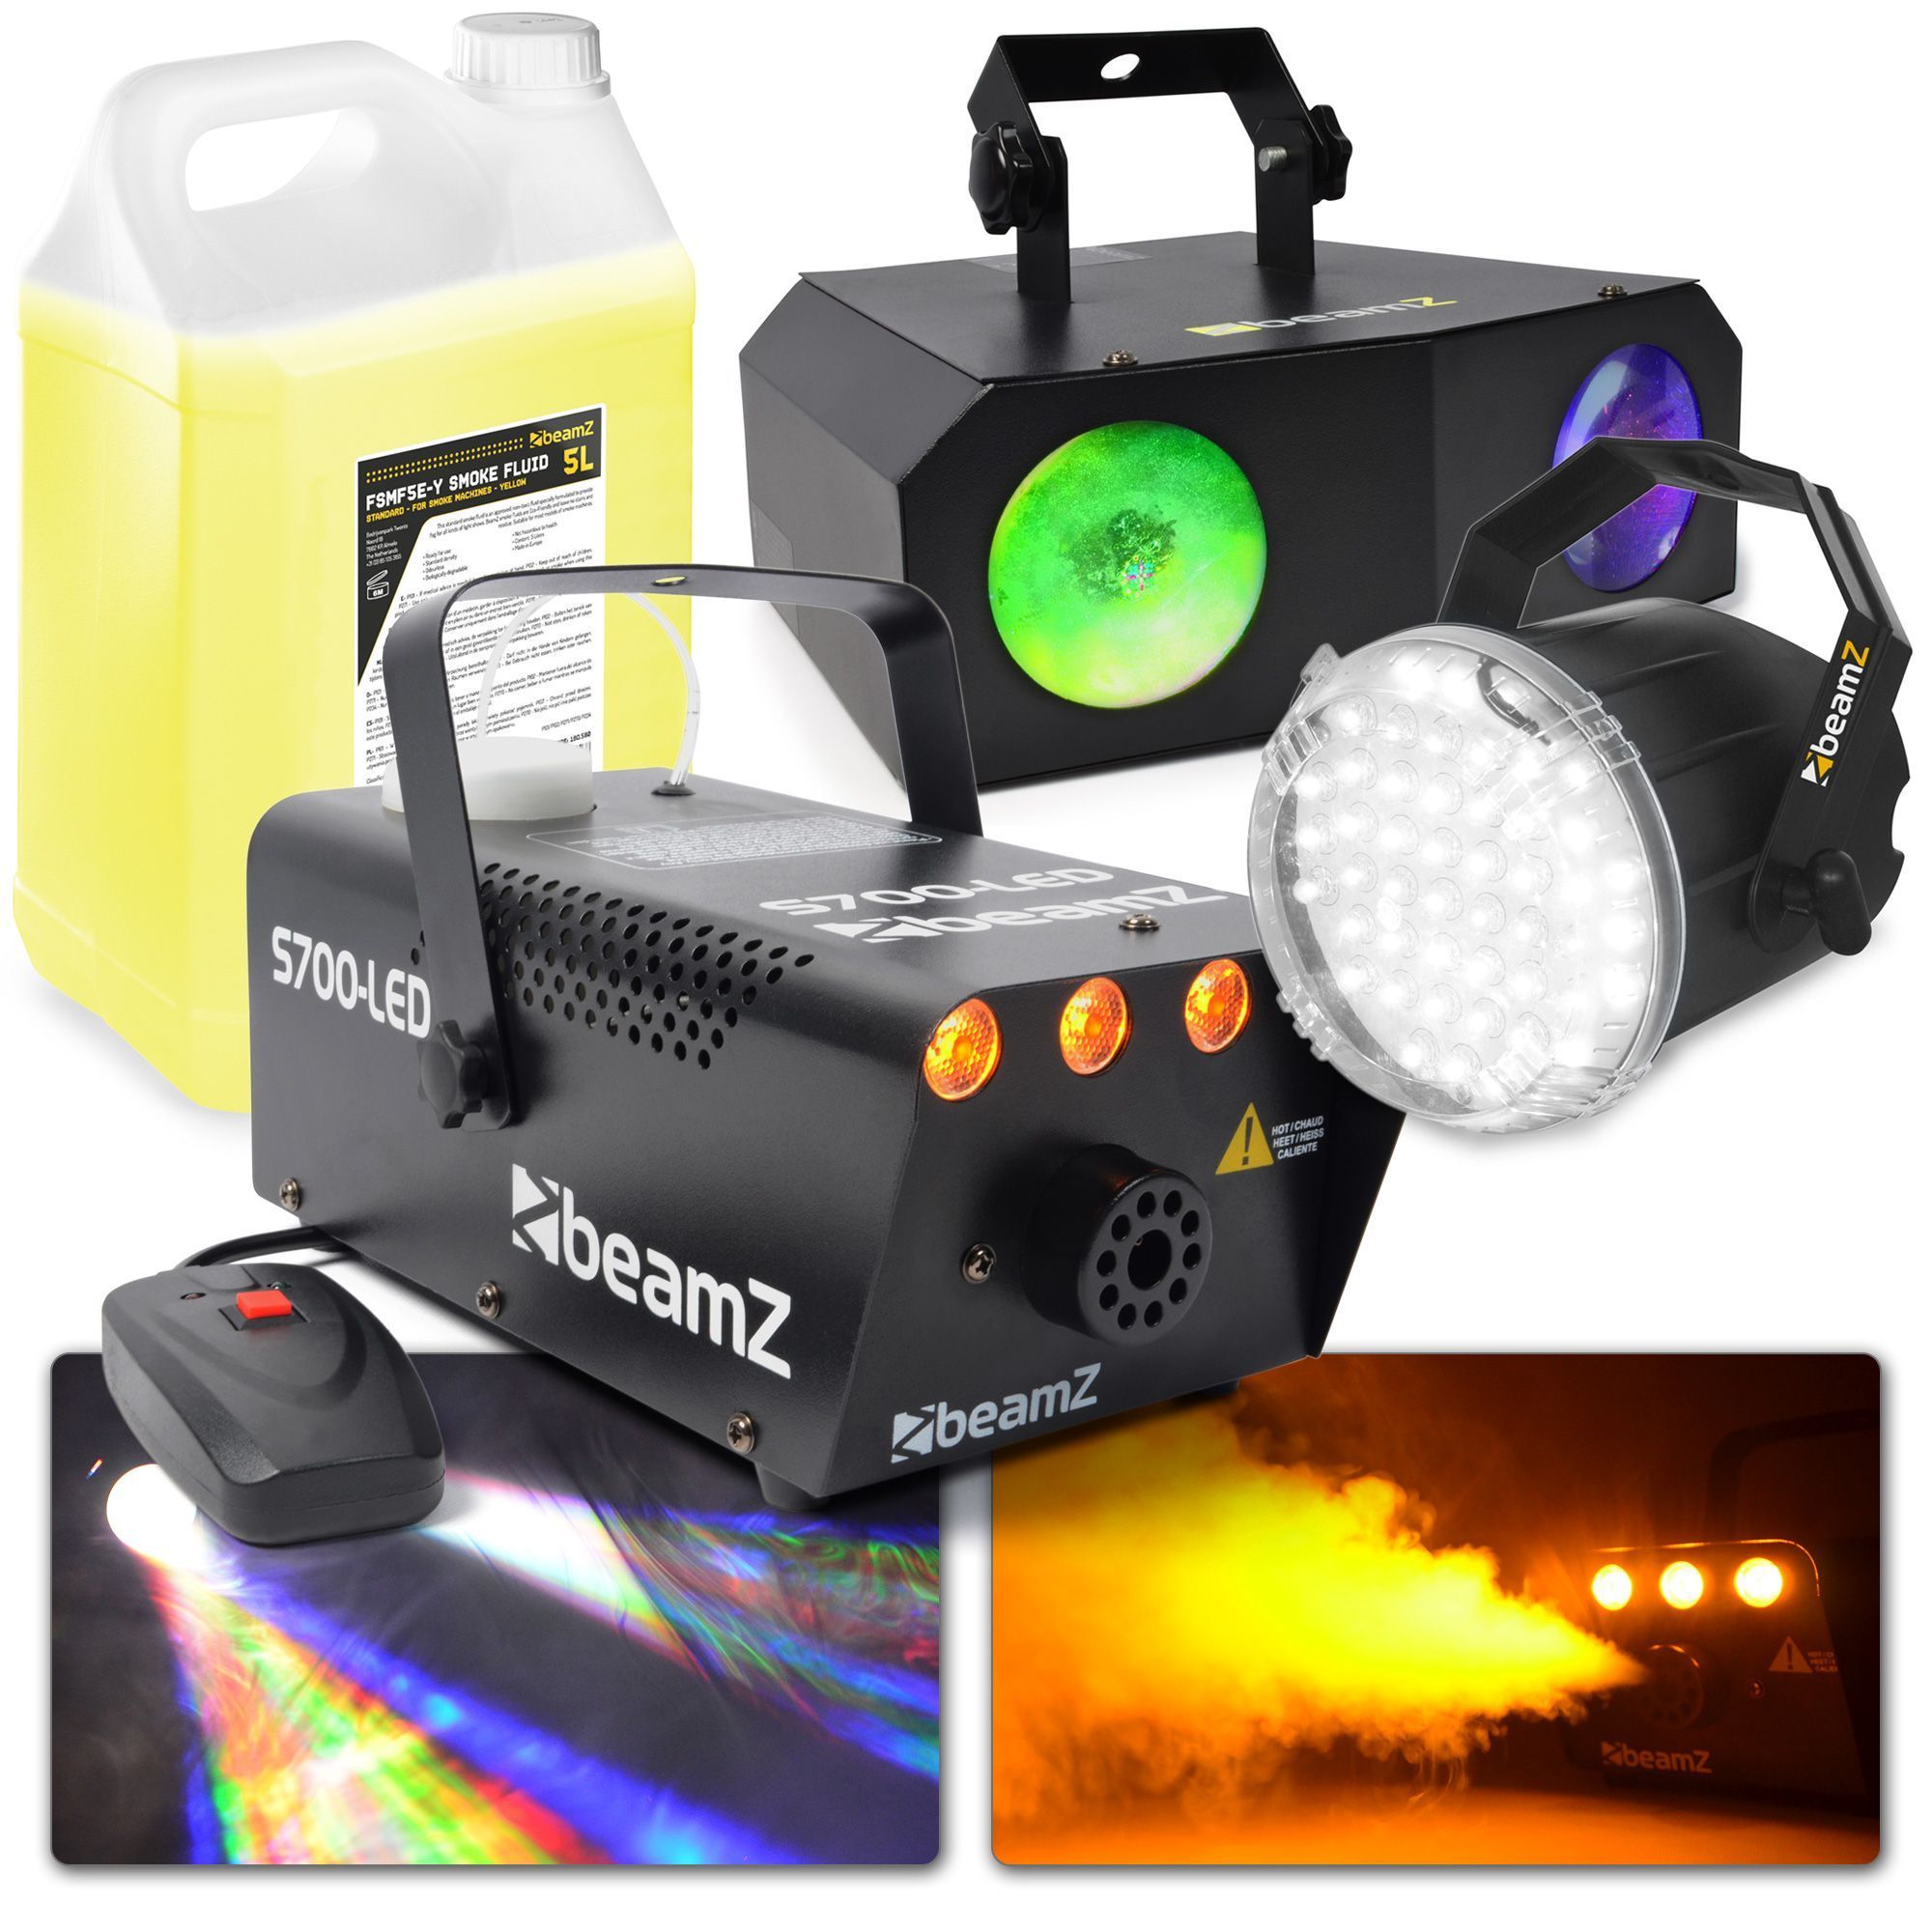 Feestverlichting - BeamZ Party pack XL partyverlichting met BeamZ Nomia lichteffect, stroboscoop en rookmachine met rookvloeistof